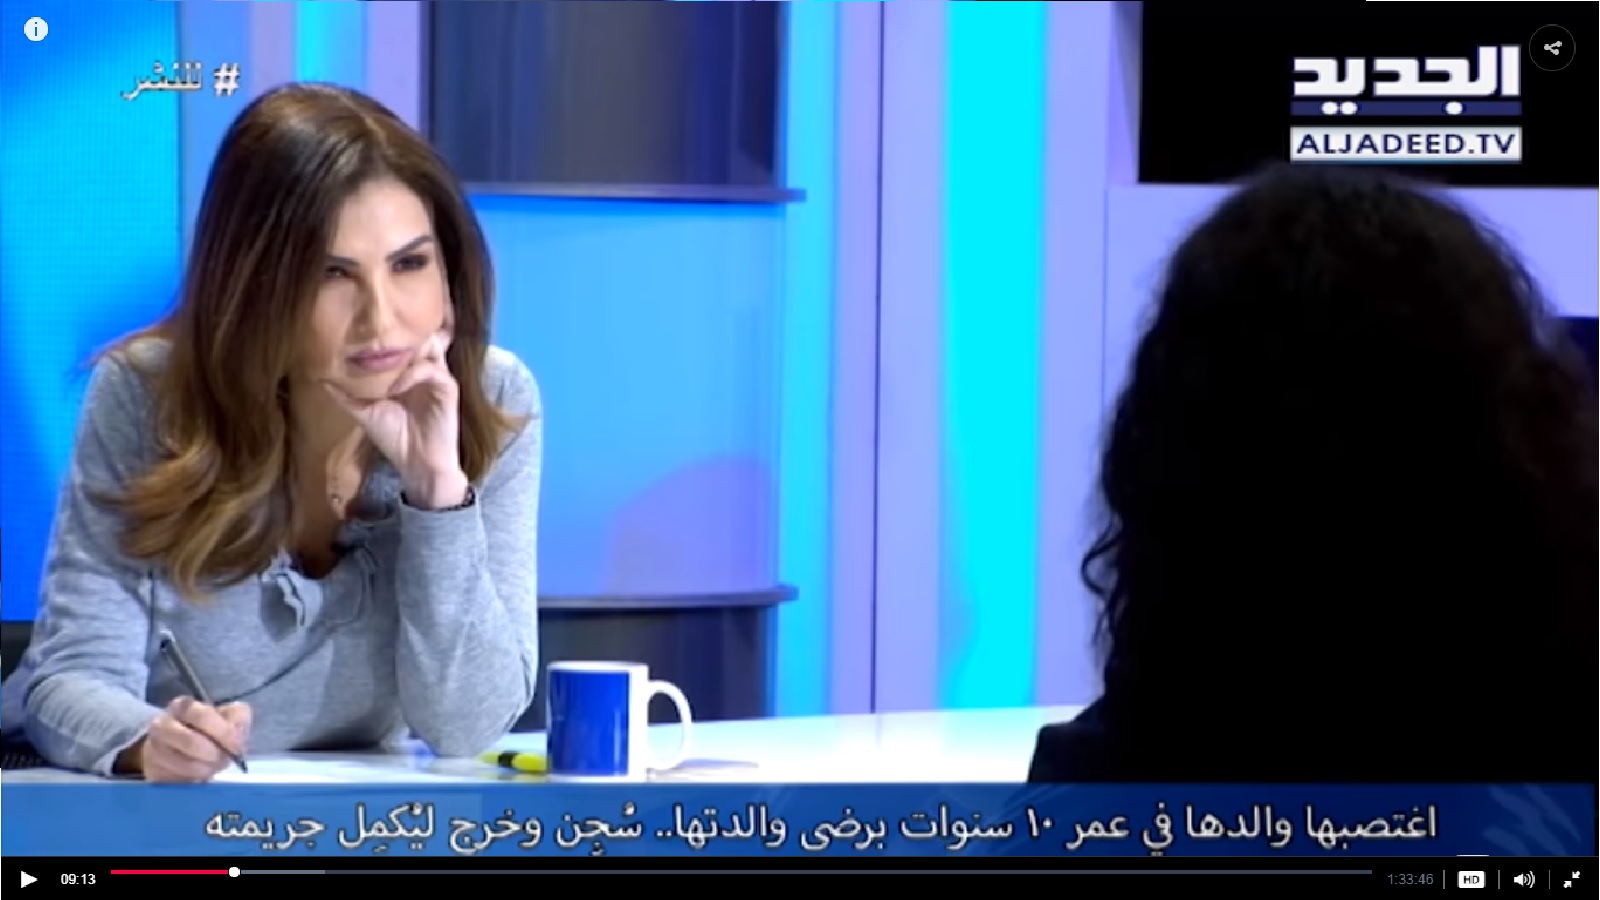 التلفزيونات اللبنانية: إثارة، تشويق، اغتصاب!